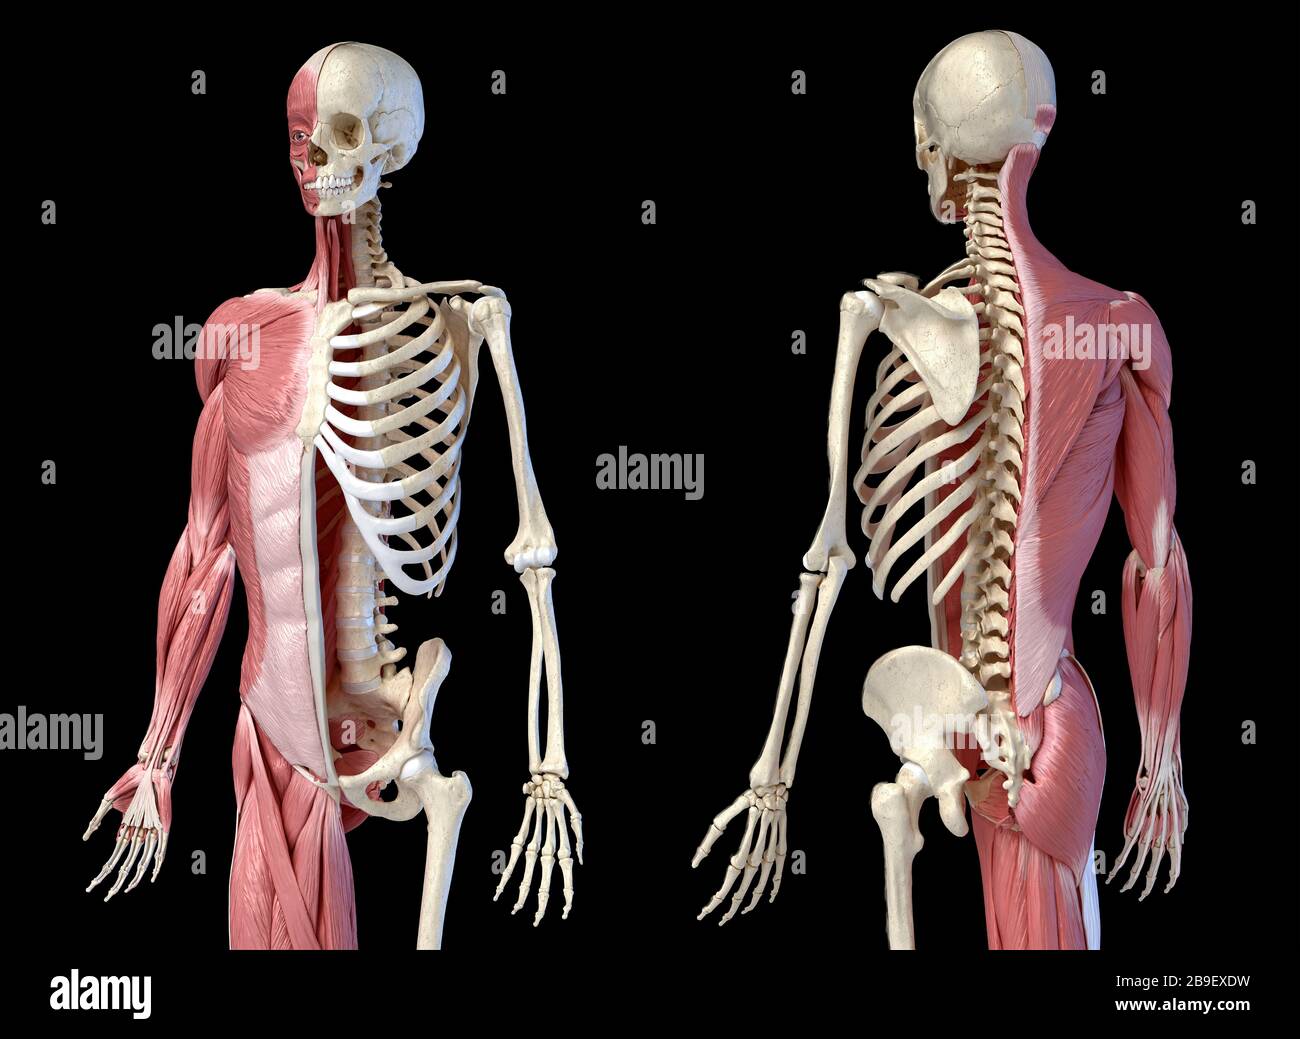 Oberkörper menschliche Anatomie von Muskel- und Skelettsystemen, schwarzer Hintergrund. Stockfoto